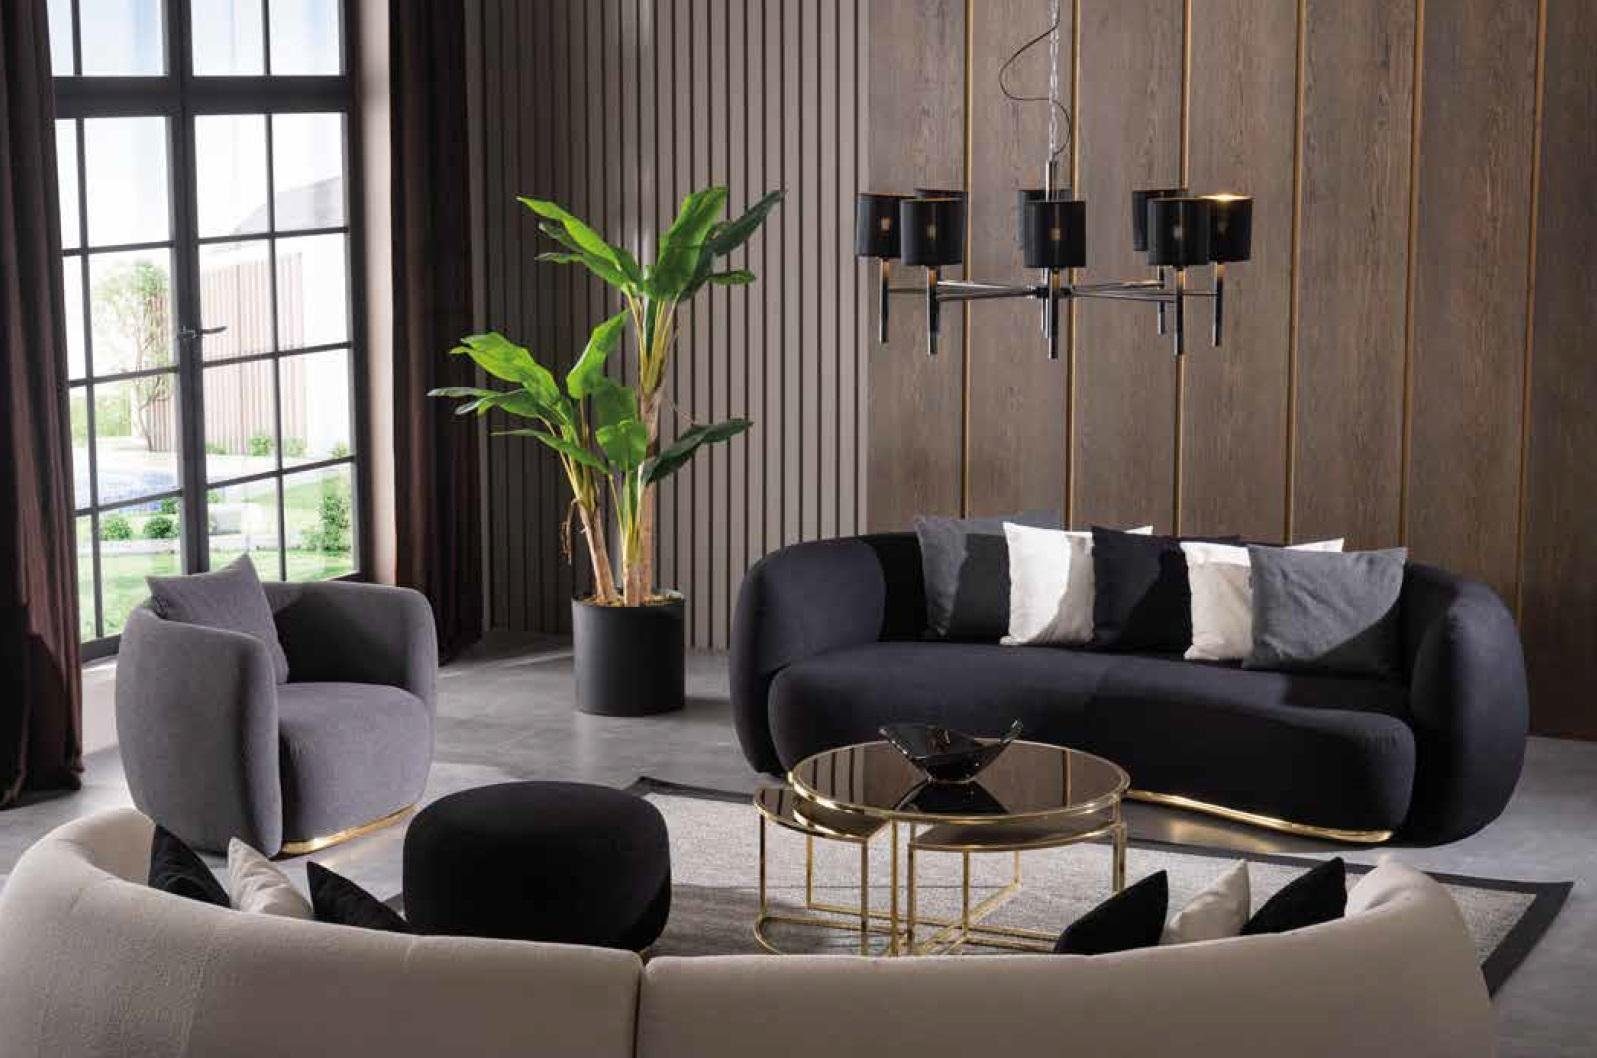 JVmoebel Sofa Ovale Polstermöbel Europe Schwarz Couch Made Luxus xxl Neu, beige in Viersitzer